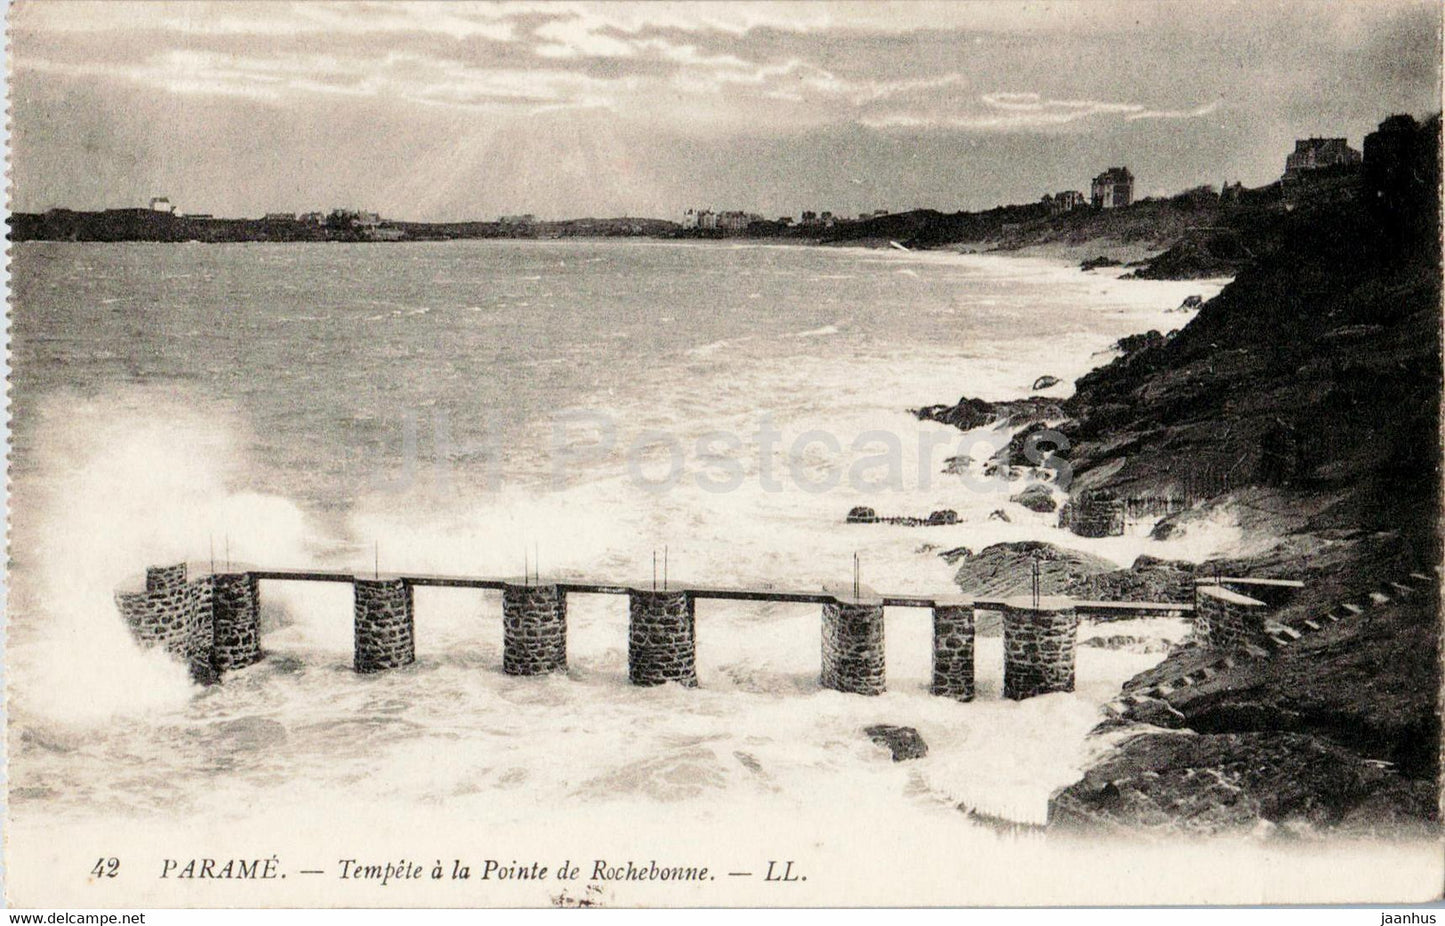 Parame - Tempete a la Pointe de Rochebonne - 42 - old postcard - 1908 - France - used - JH Postcards